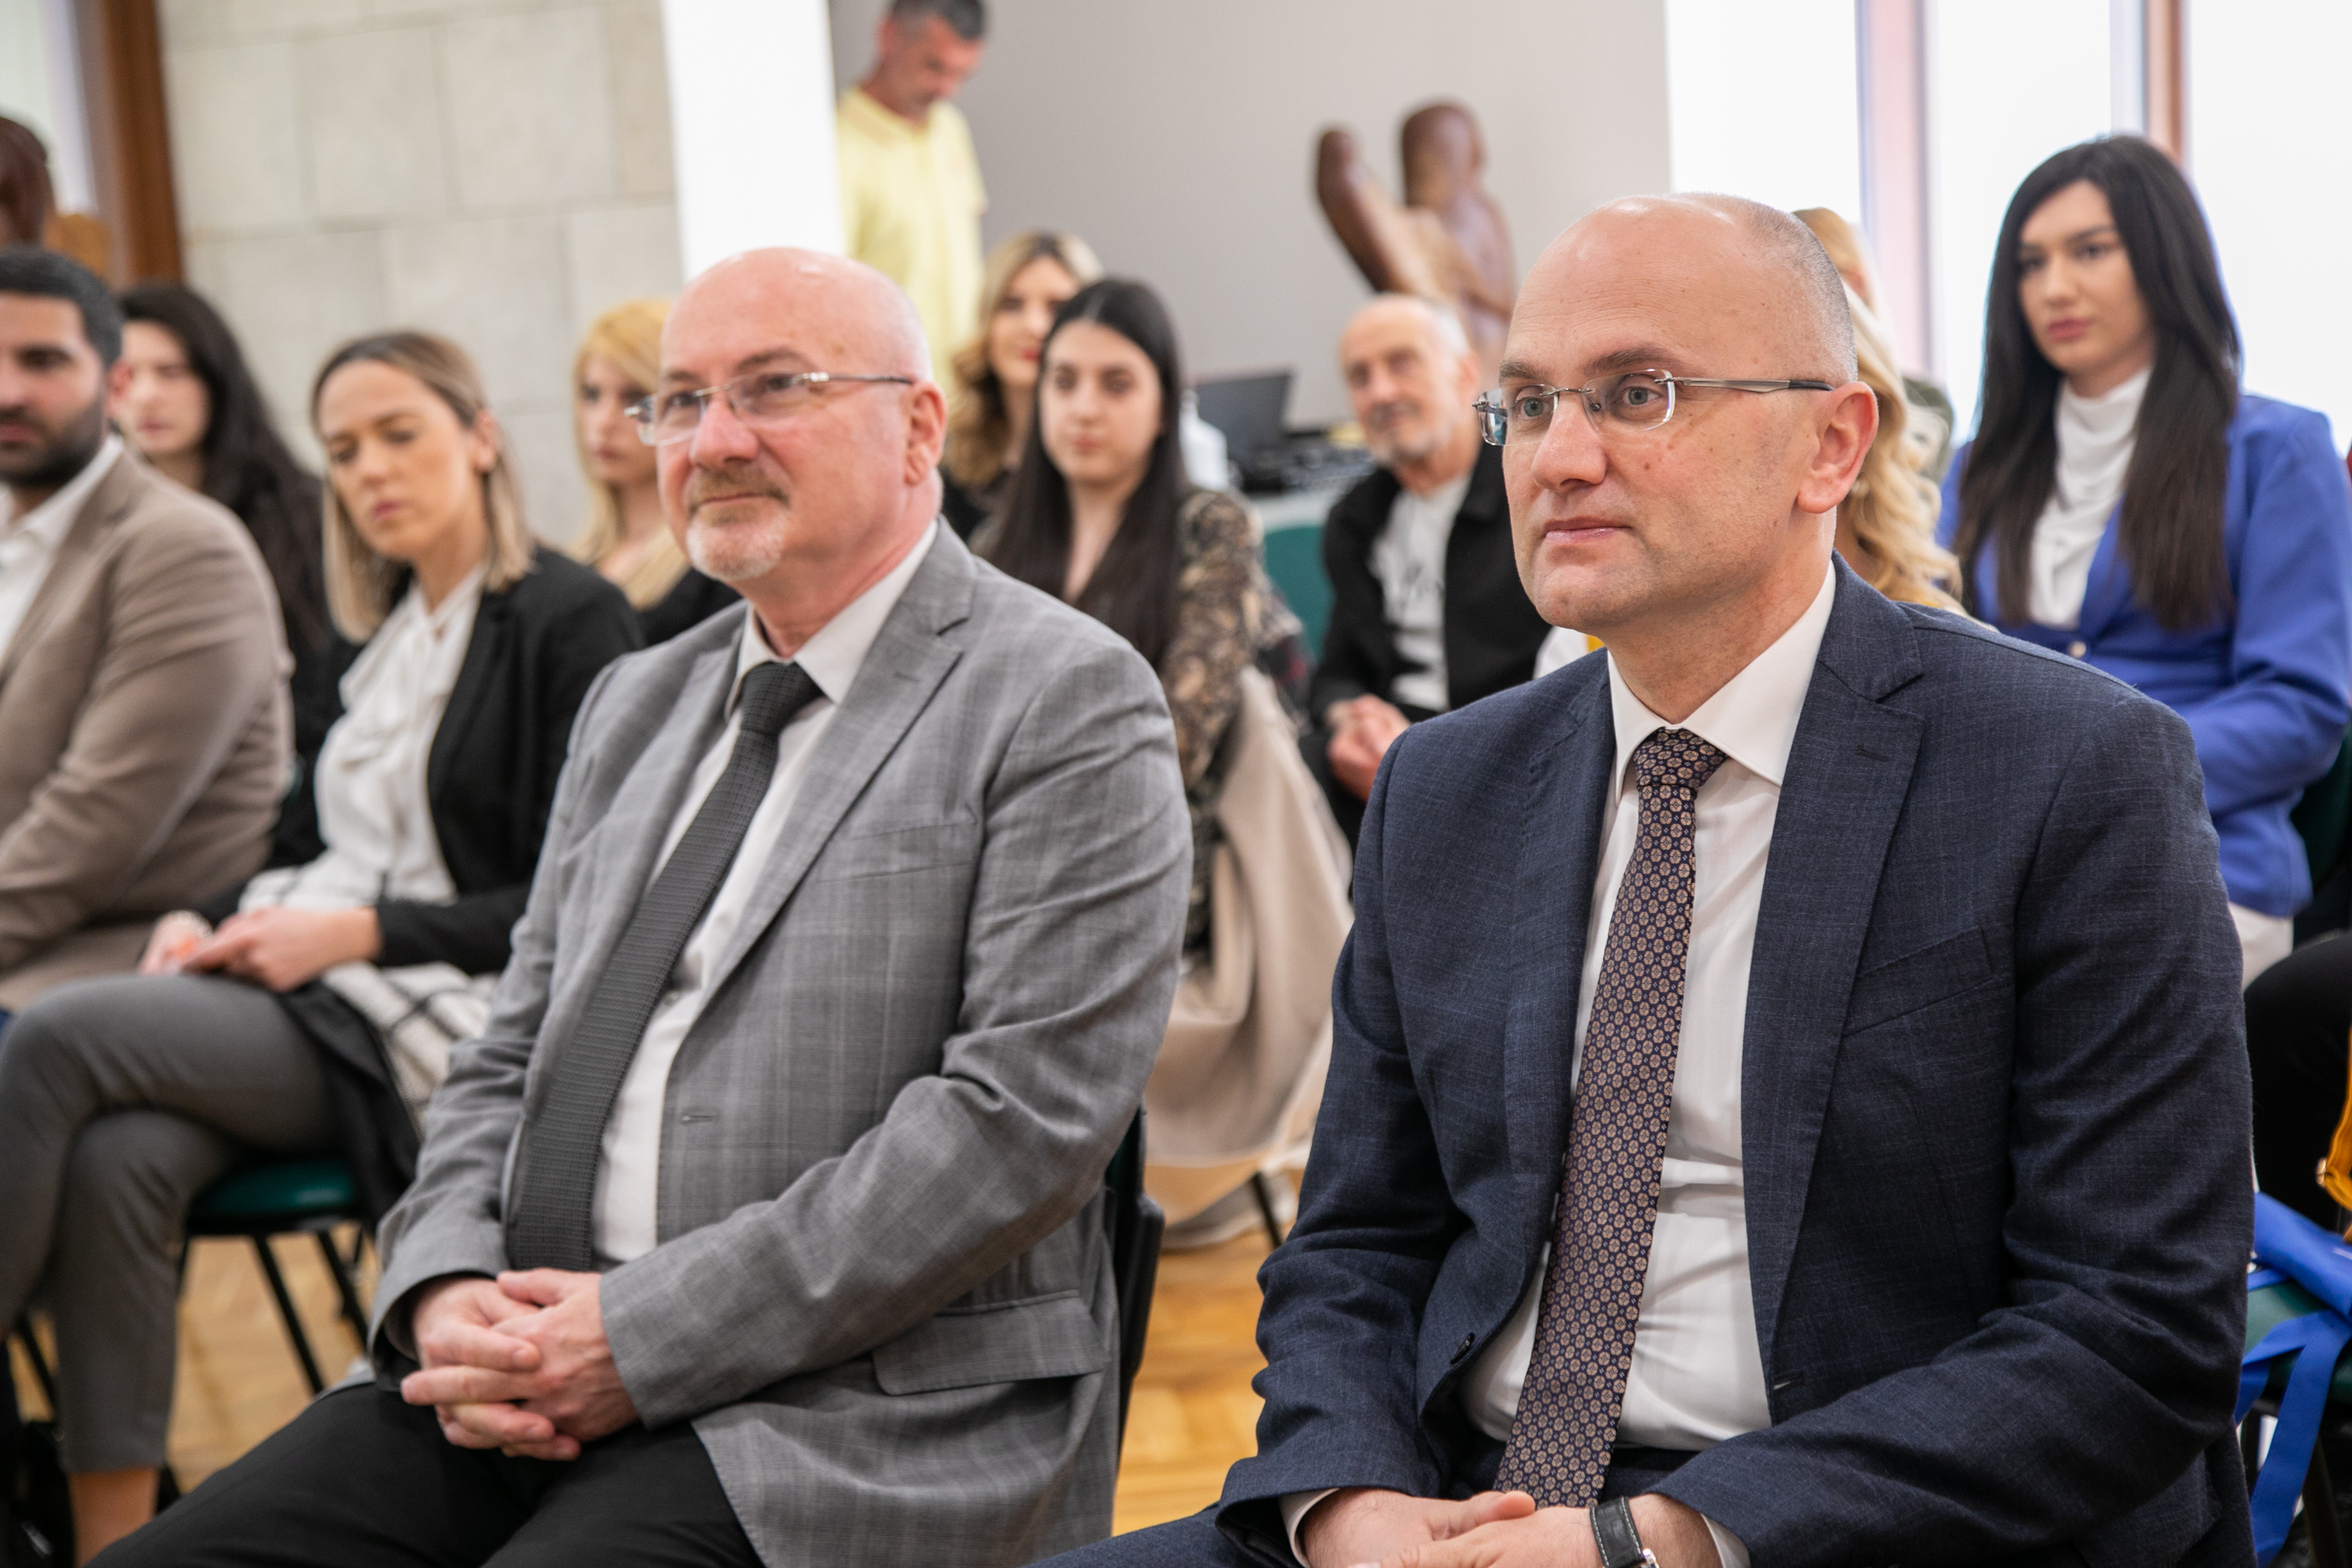 Vuković sa dobitnicima stipendije: Najbolje investicije su one usmjerene na mlade ljude i njihovo obrazovanje